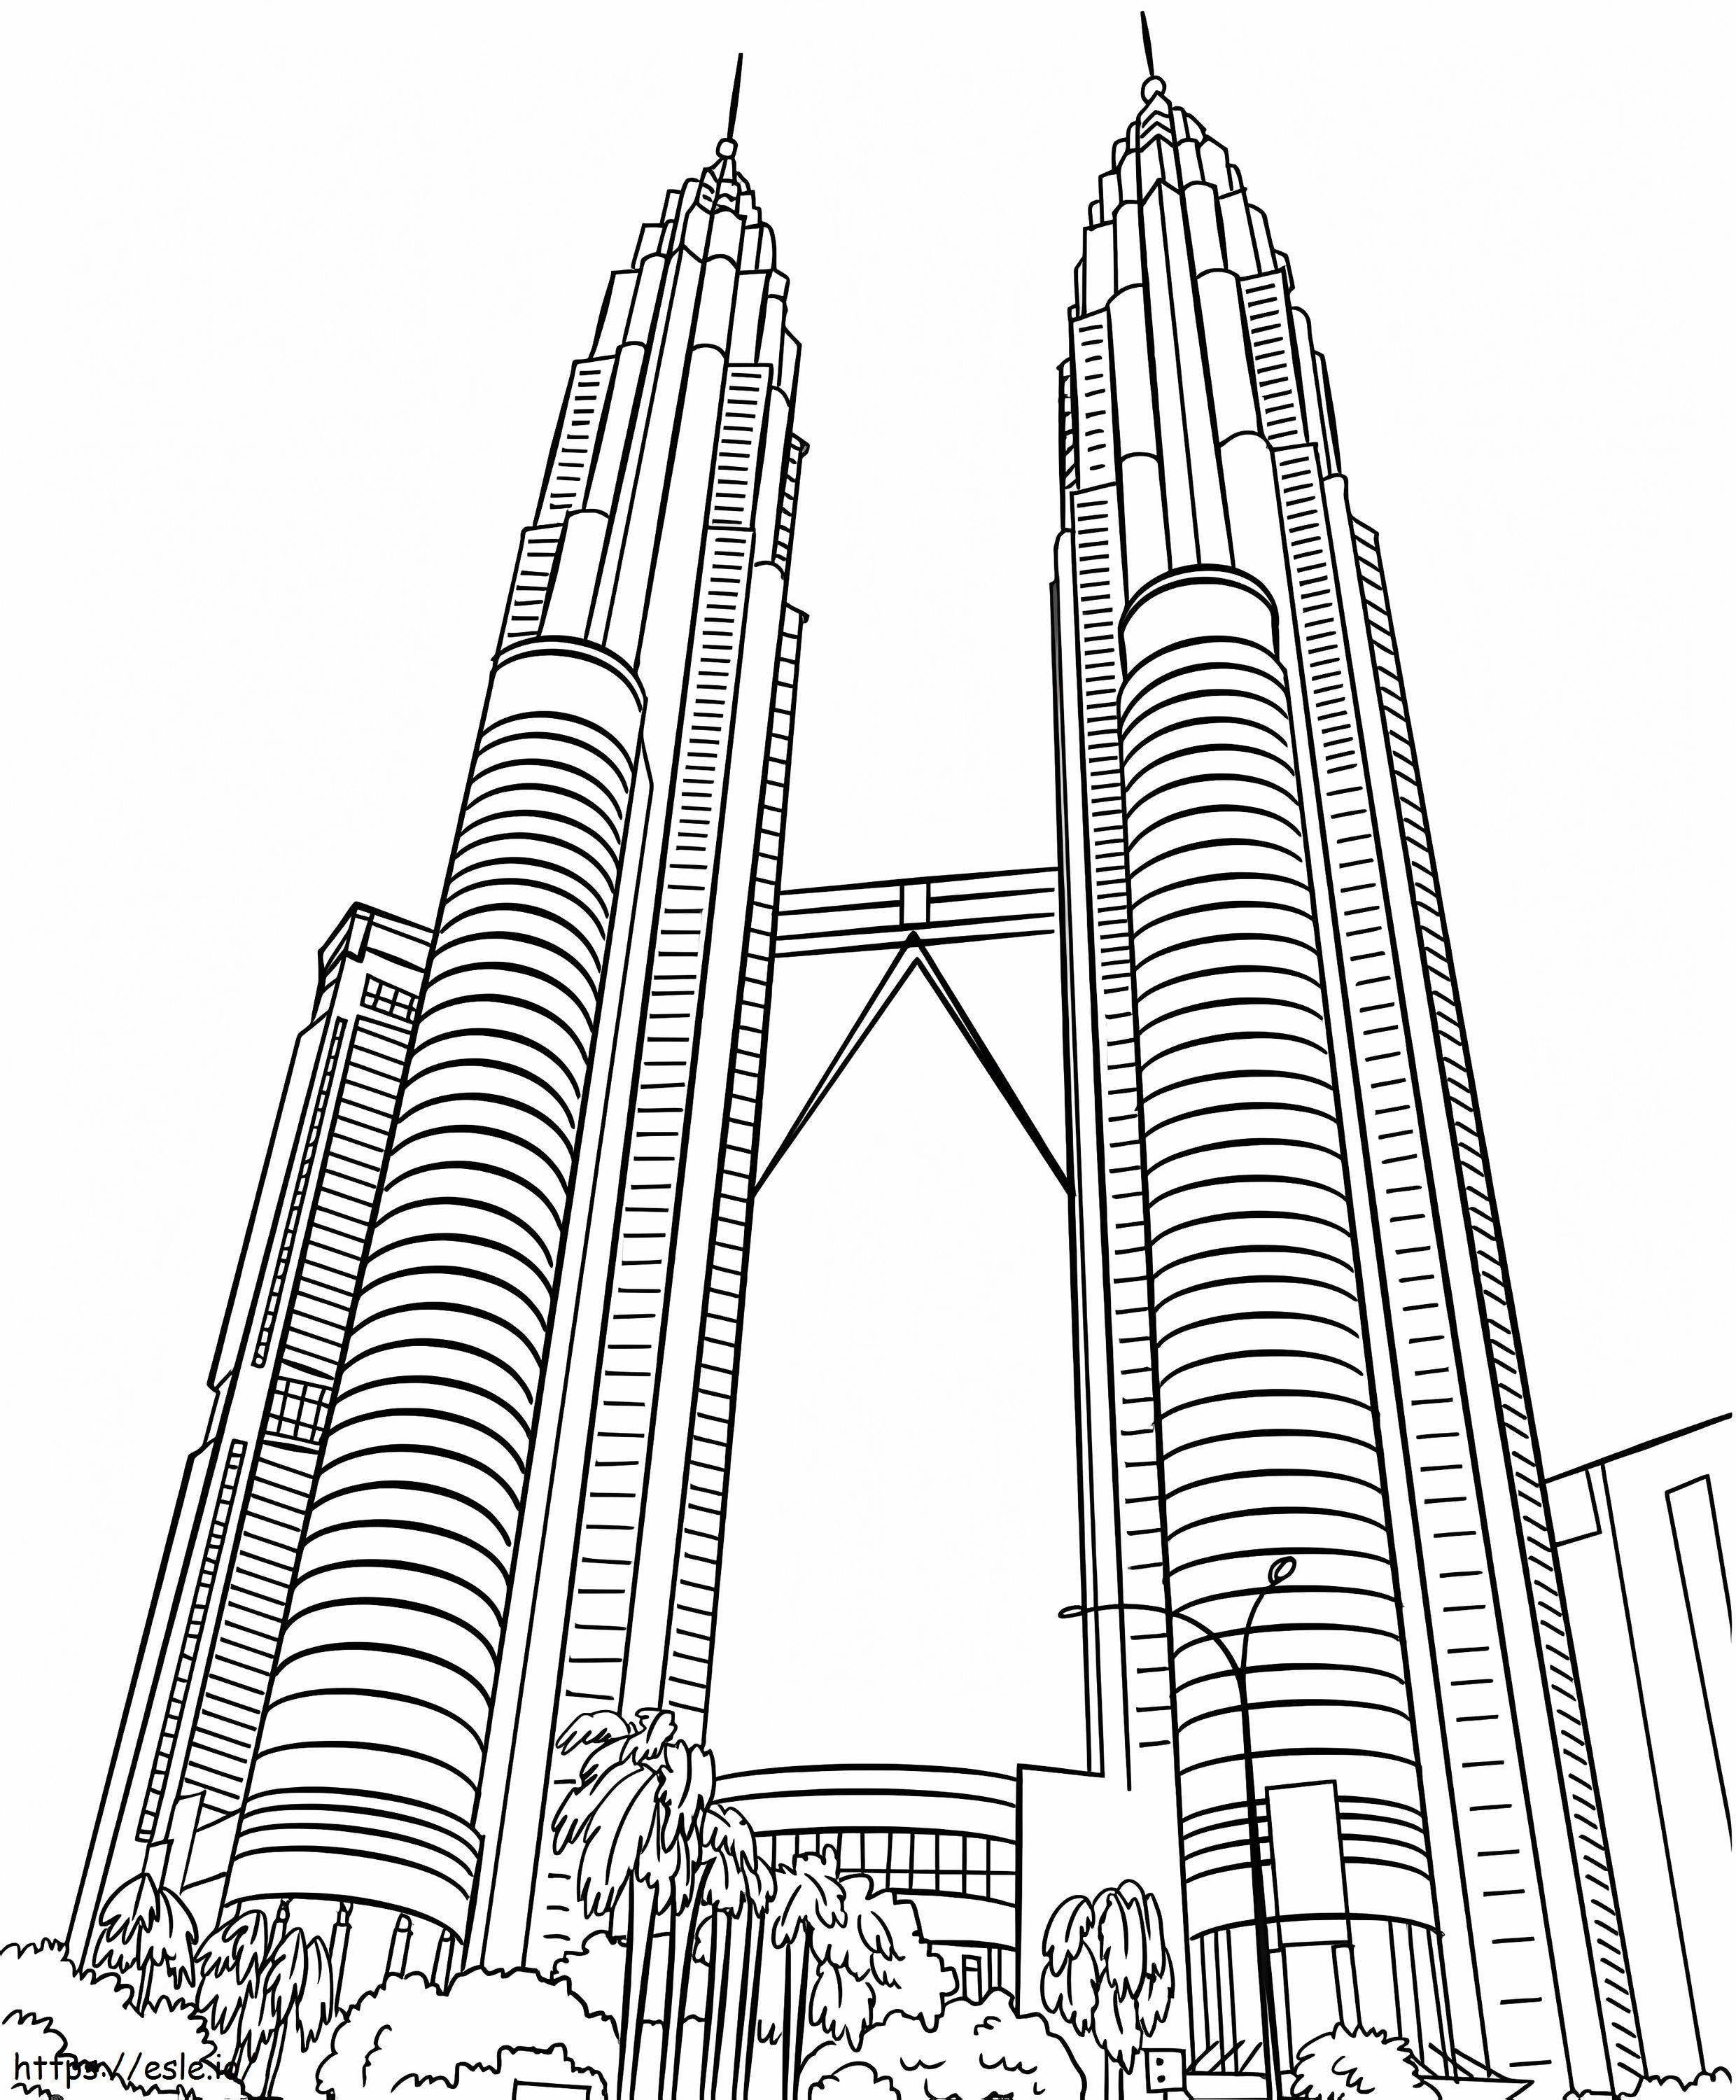 Torres Gêmeas Petronas 2 para colorir